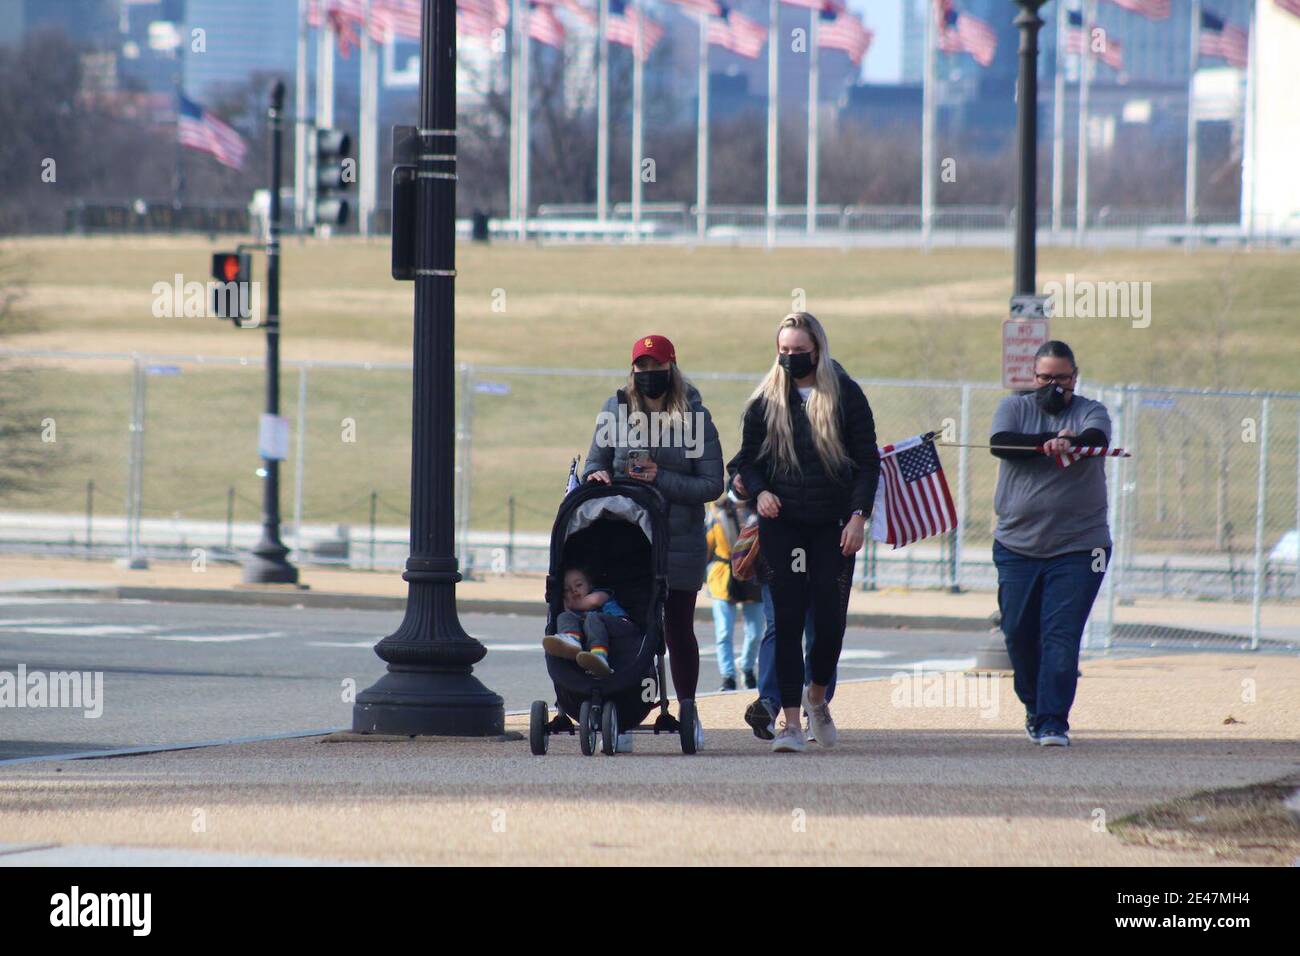 Washington DC, District de Columbia, États-Unis. 21 janvier 2021. Le lendemain de l'assermentation de Joe Biden, le National Mall toujours entouré de clôtures métalliques s'est ouvert aux visiteurs, leur permettant même de prendre des drapeaux. Cette famille à visage masqué marche des drapeaux suspendus vers le parc où près de 200,000 petits drapeaux ont été plantés en hommage aux victimes décédées de Covid-19. Le parc a également donné un effet impressionnant après avoir été illuminé pendant les cérémonies d'inauguration. Crédit : Marie le BLE/ZUMA Wire/Alay Live News Banque D'Images